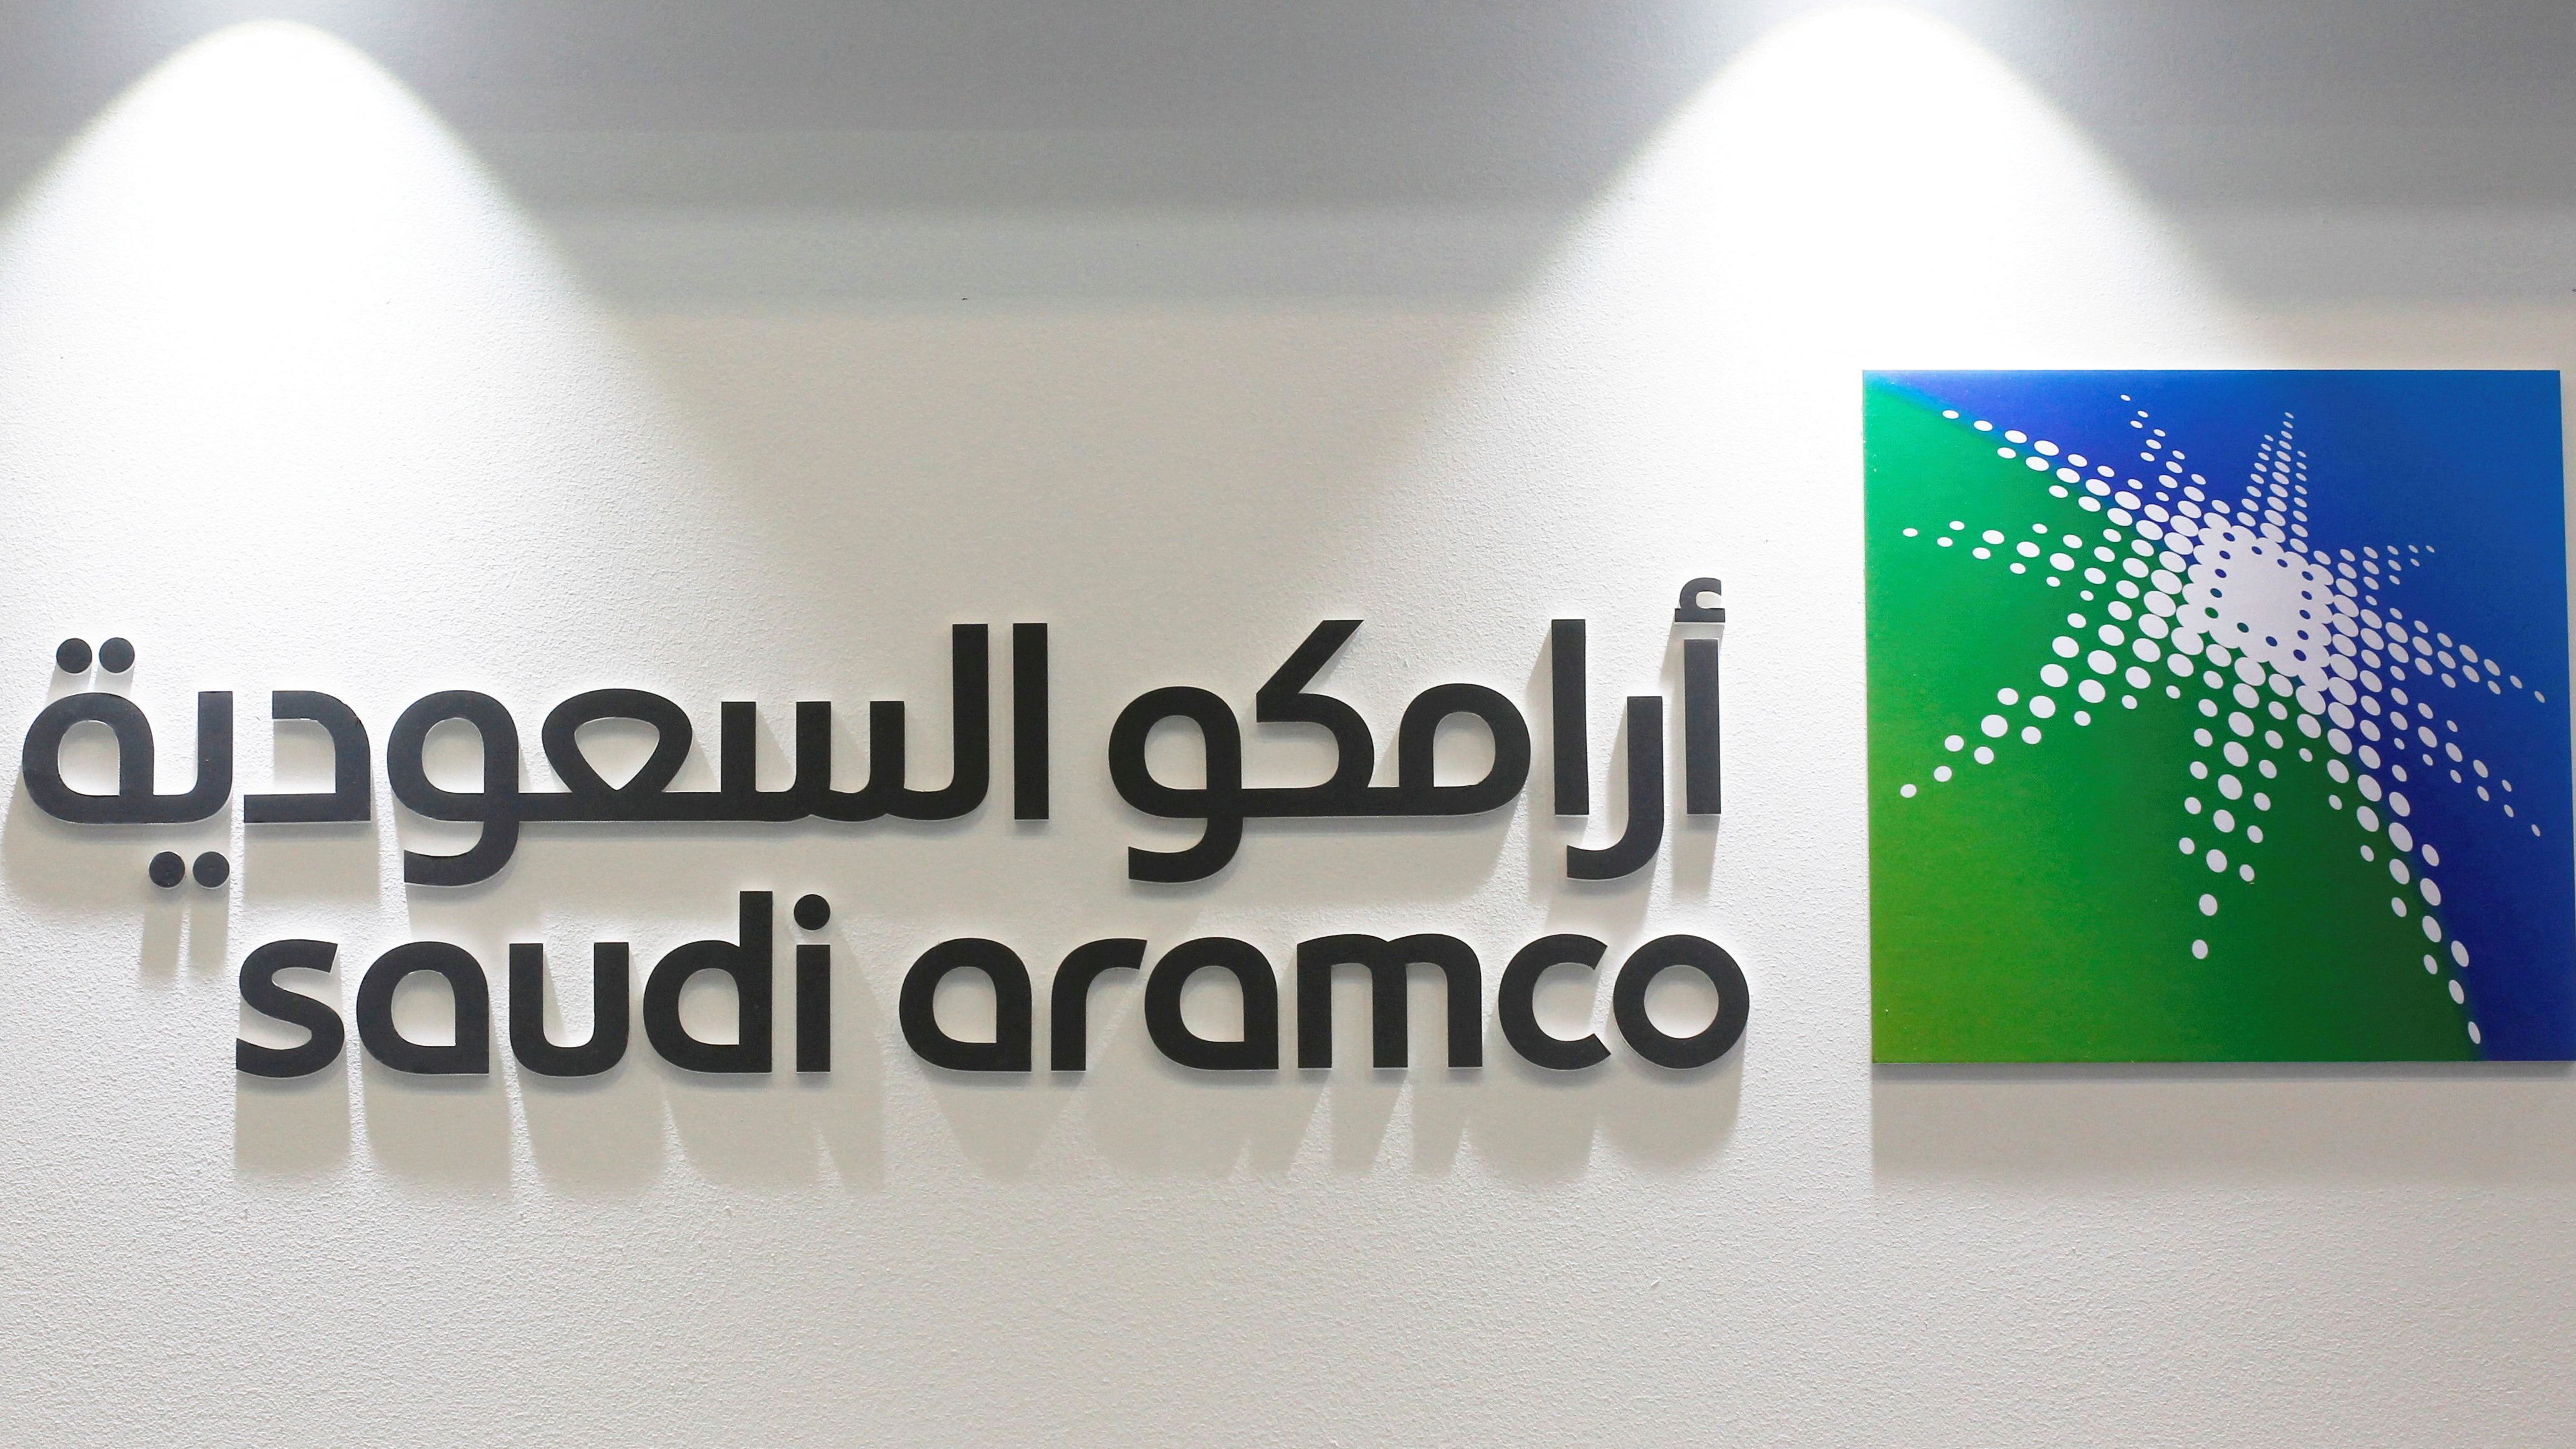 Auf Platz zwei landet Saudi Aramco&nbsp;mit rund 2,3 Billionen US-Dollar Marktwert. Das Unternehmen&nbsp;ist die derzeit größte Erdölfördergesellschaft der Welt.